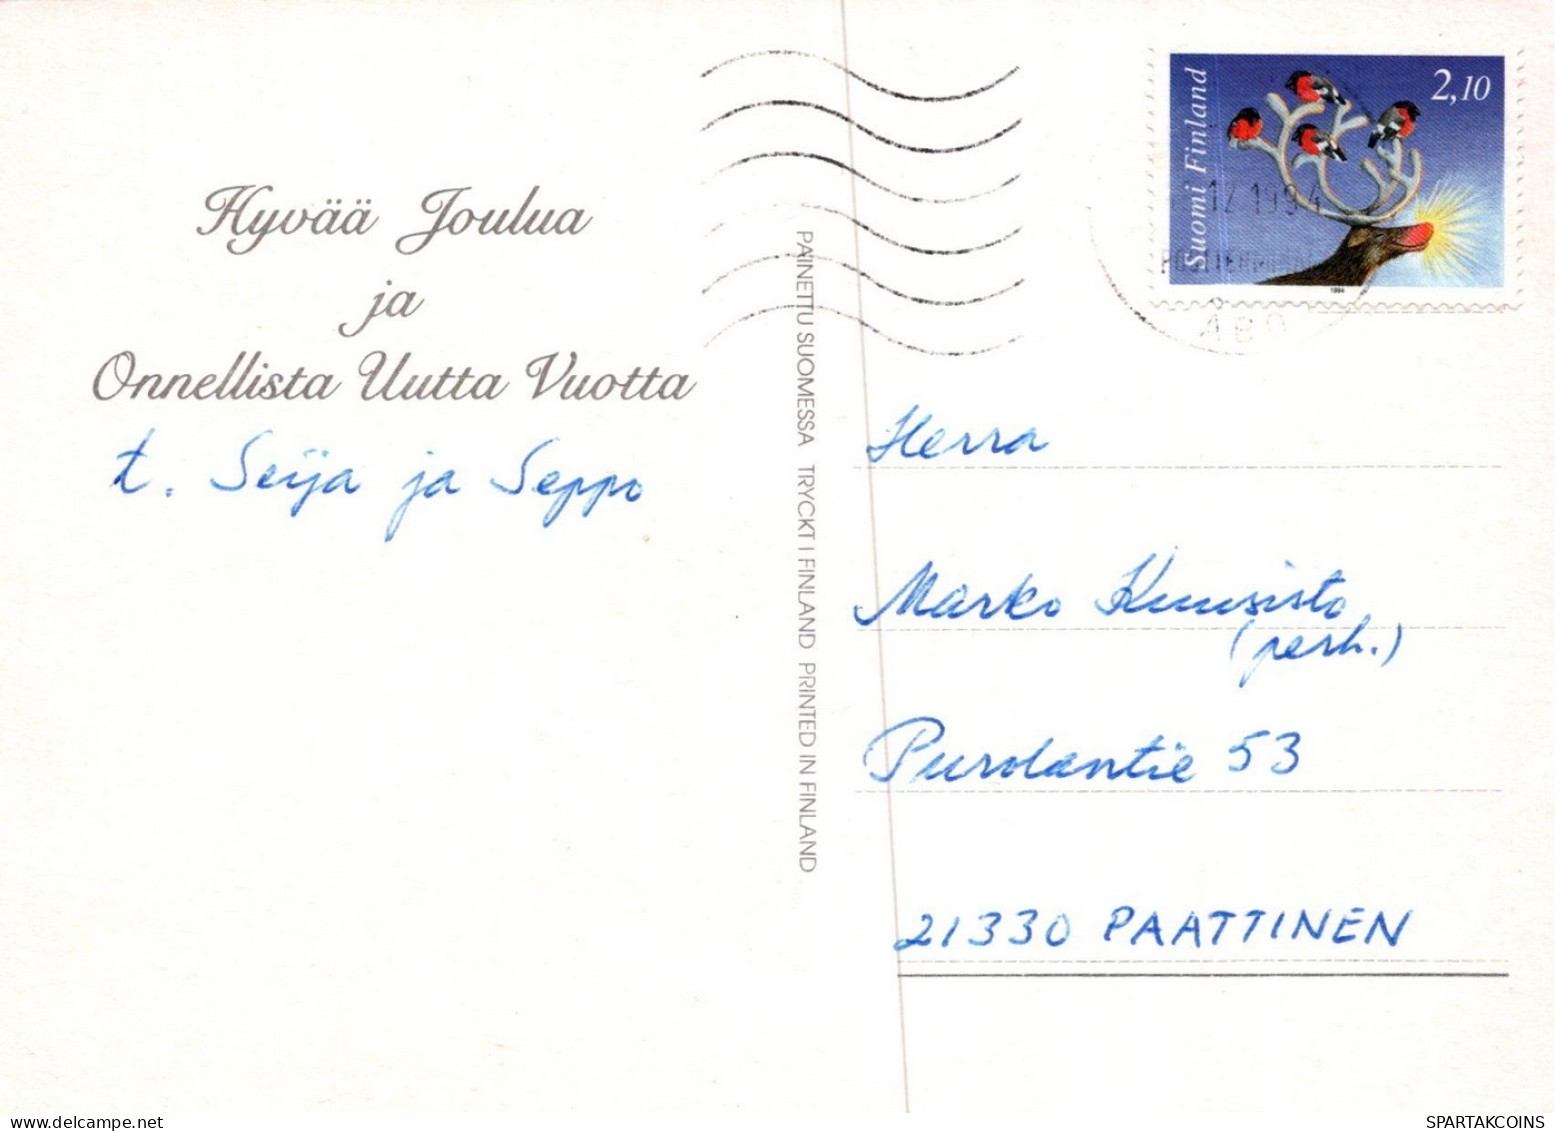 PÈRE NOËL Animaux NOËL Fêtes Voeux Vintage Carte Postale CPSM #PAK653.FR - Santa Claus